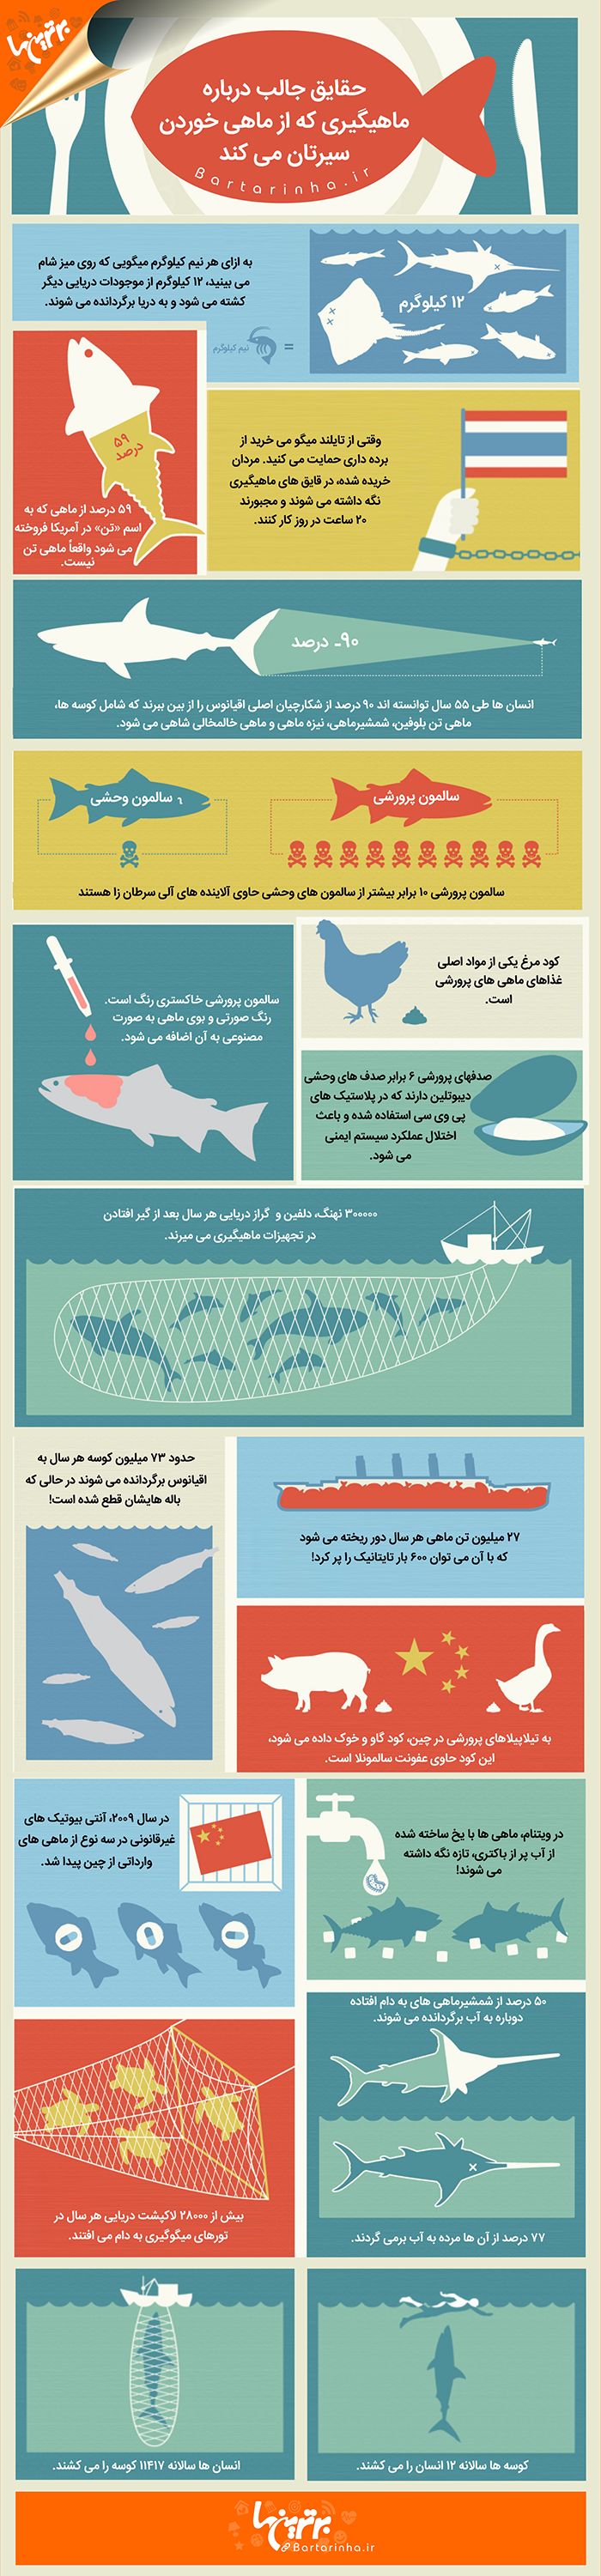 اینفوگرافی: حقایق جالب درباره ماهیگیری